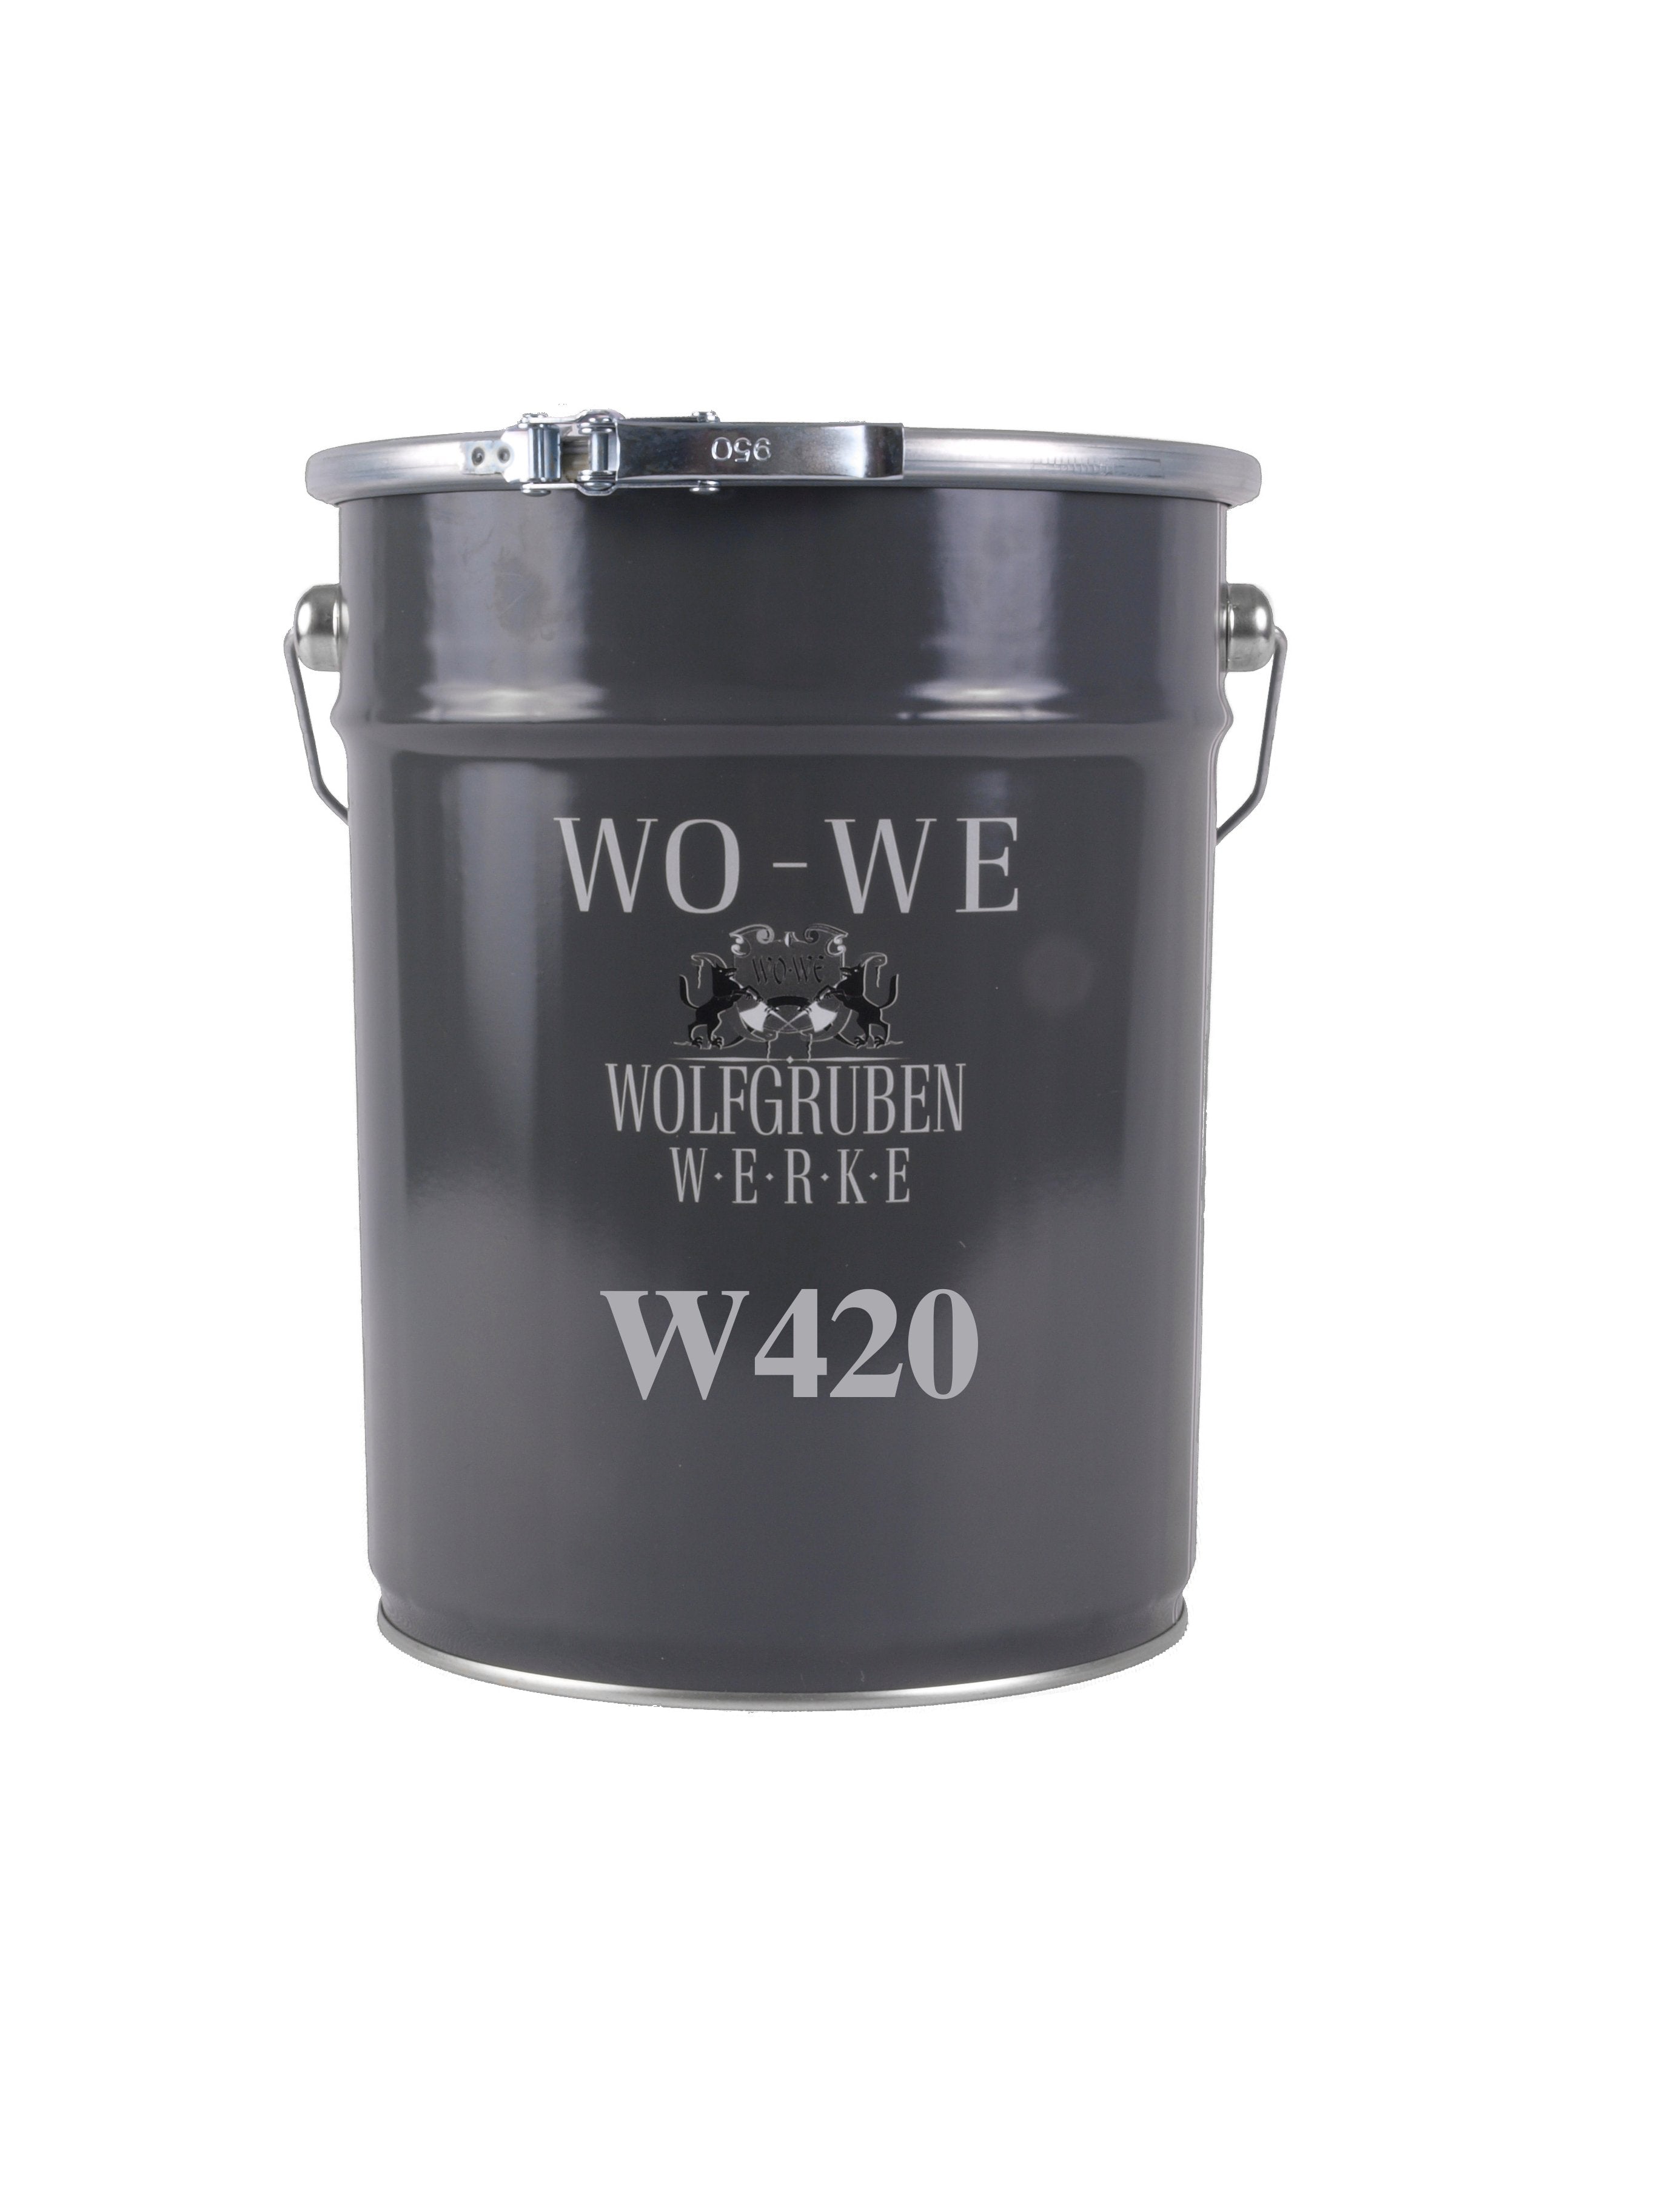 Verarbeitungsanleitung Holzlack W420 von WO-WE